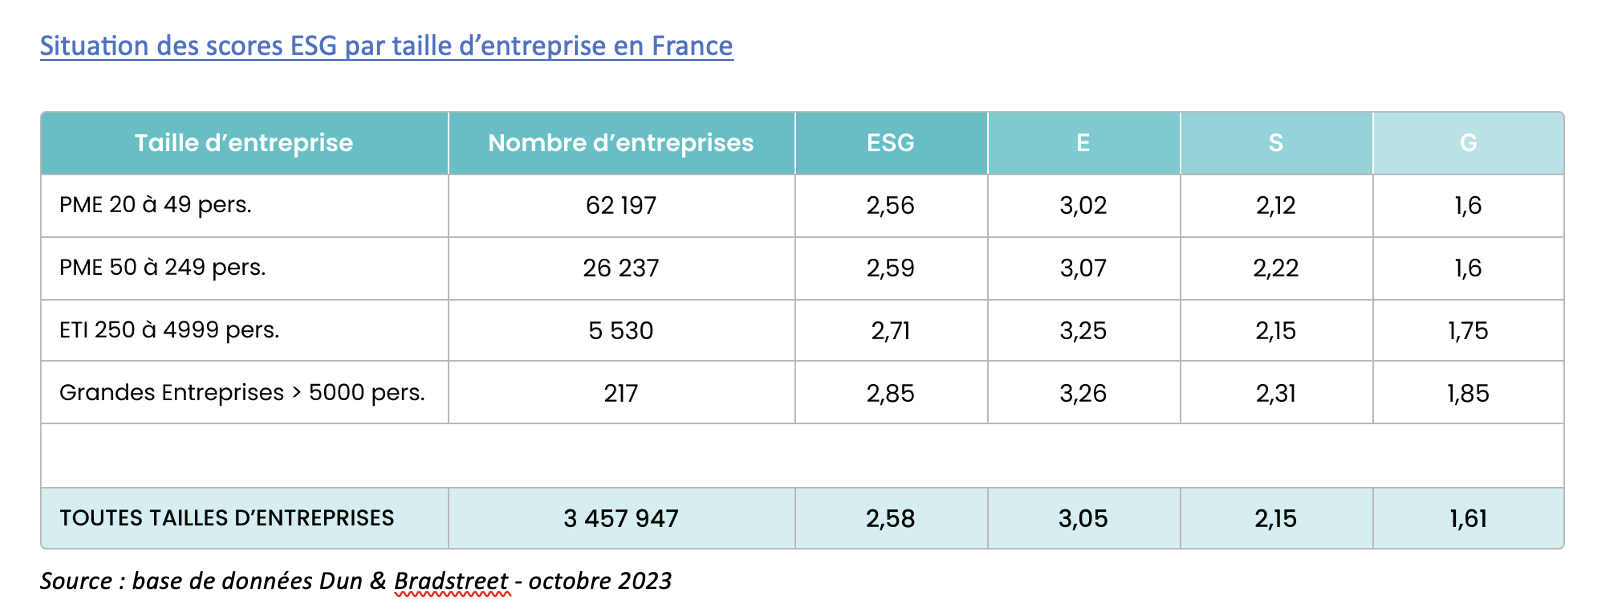 Scores ESG par taille dentreprise en France